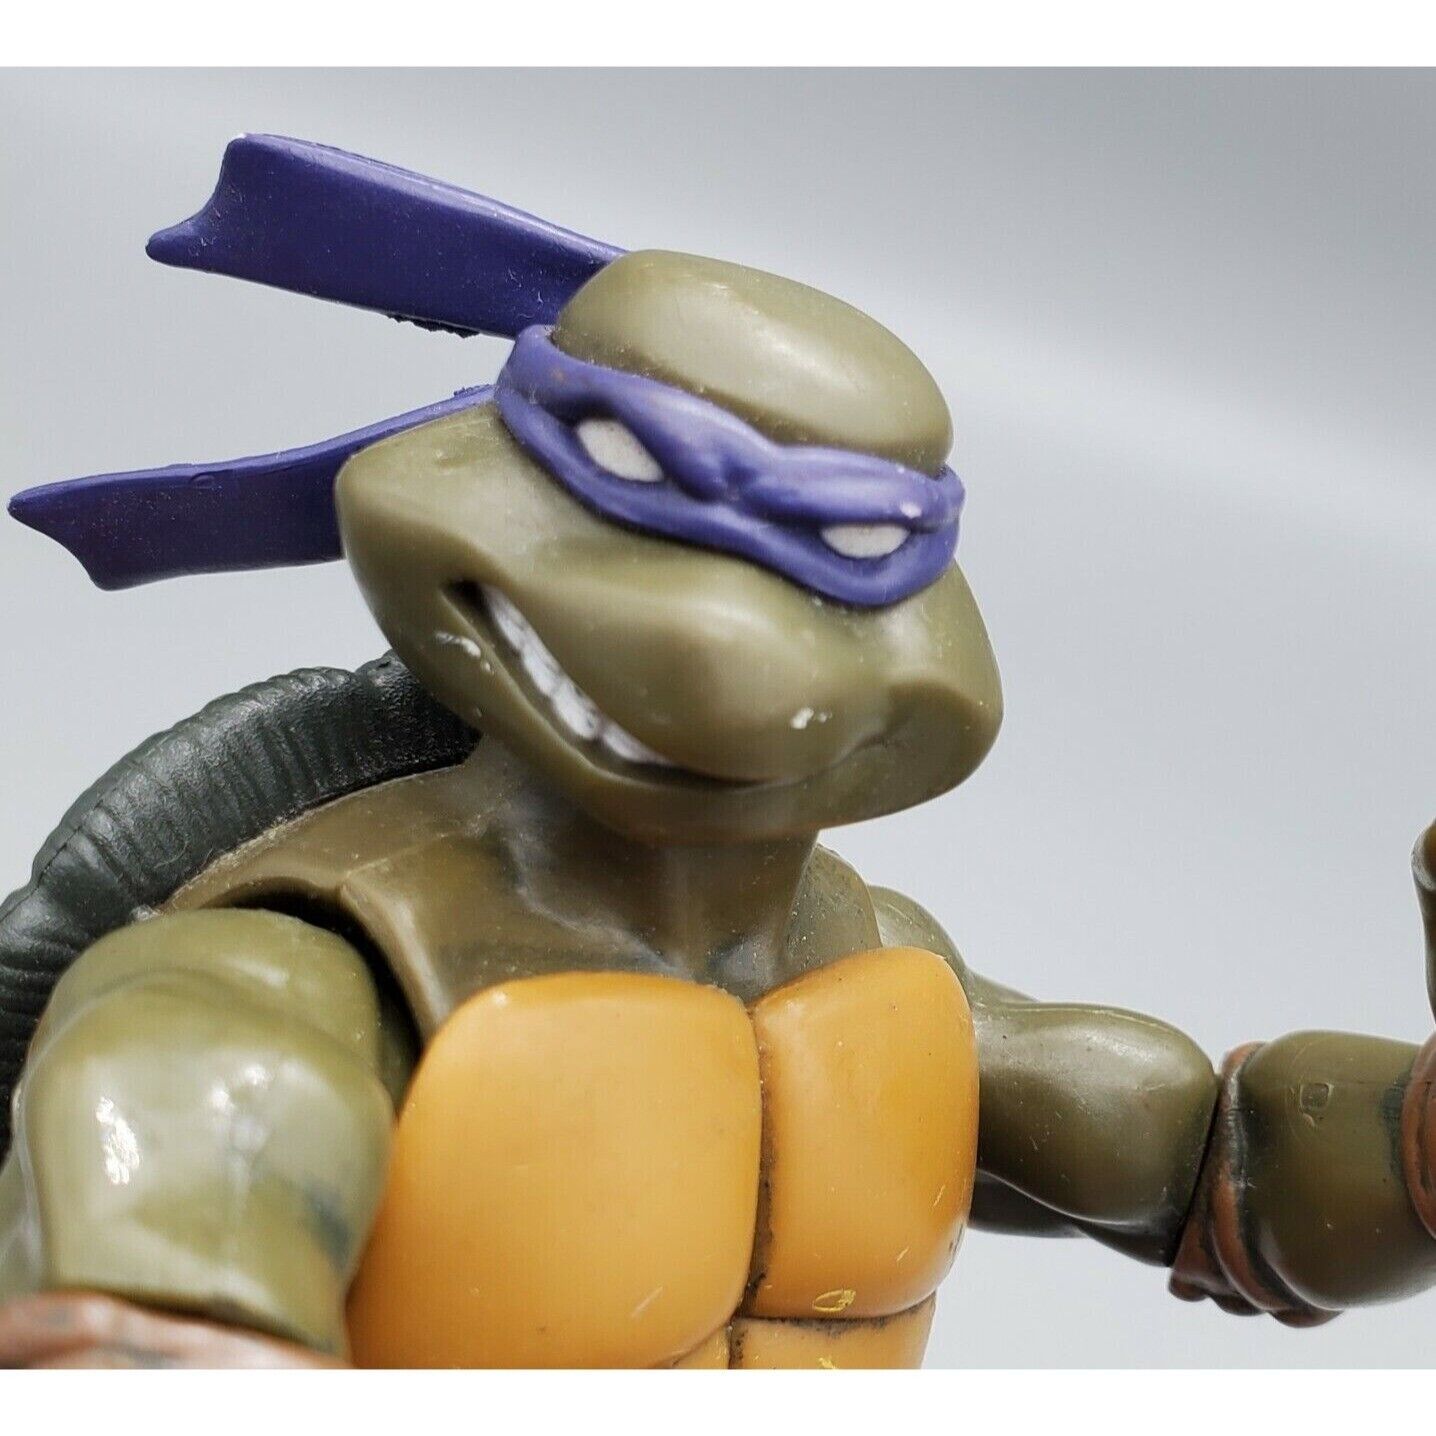 Primary image for Donatello TMNT Teenage Mutant Ninja Turtles 2002 5" Action Figure Playmates